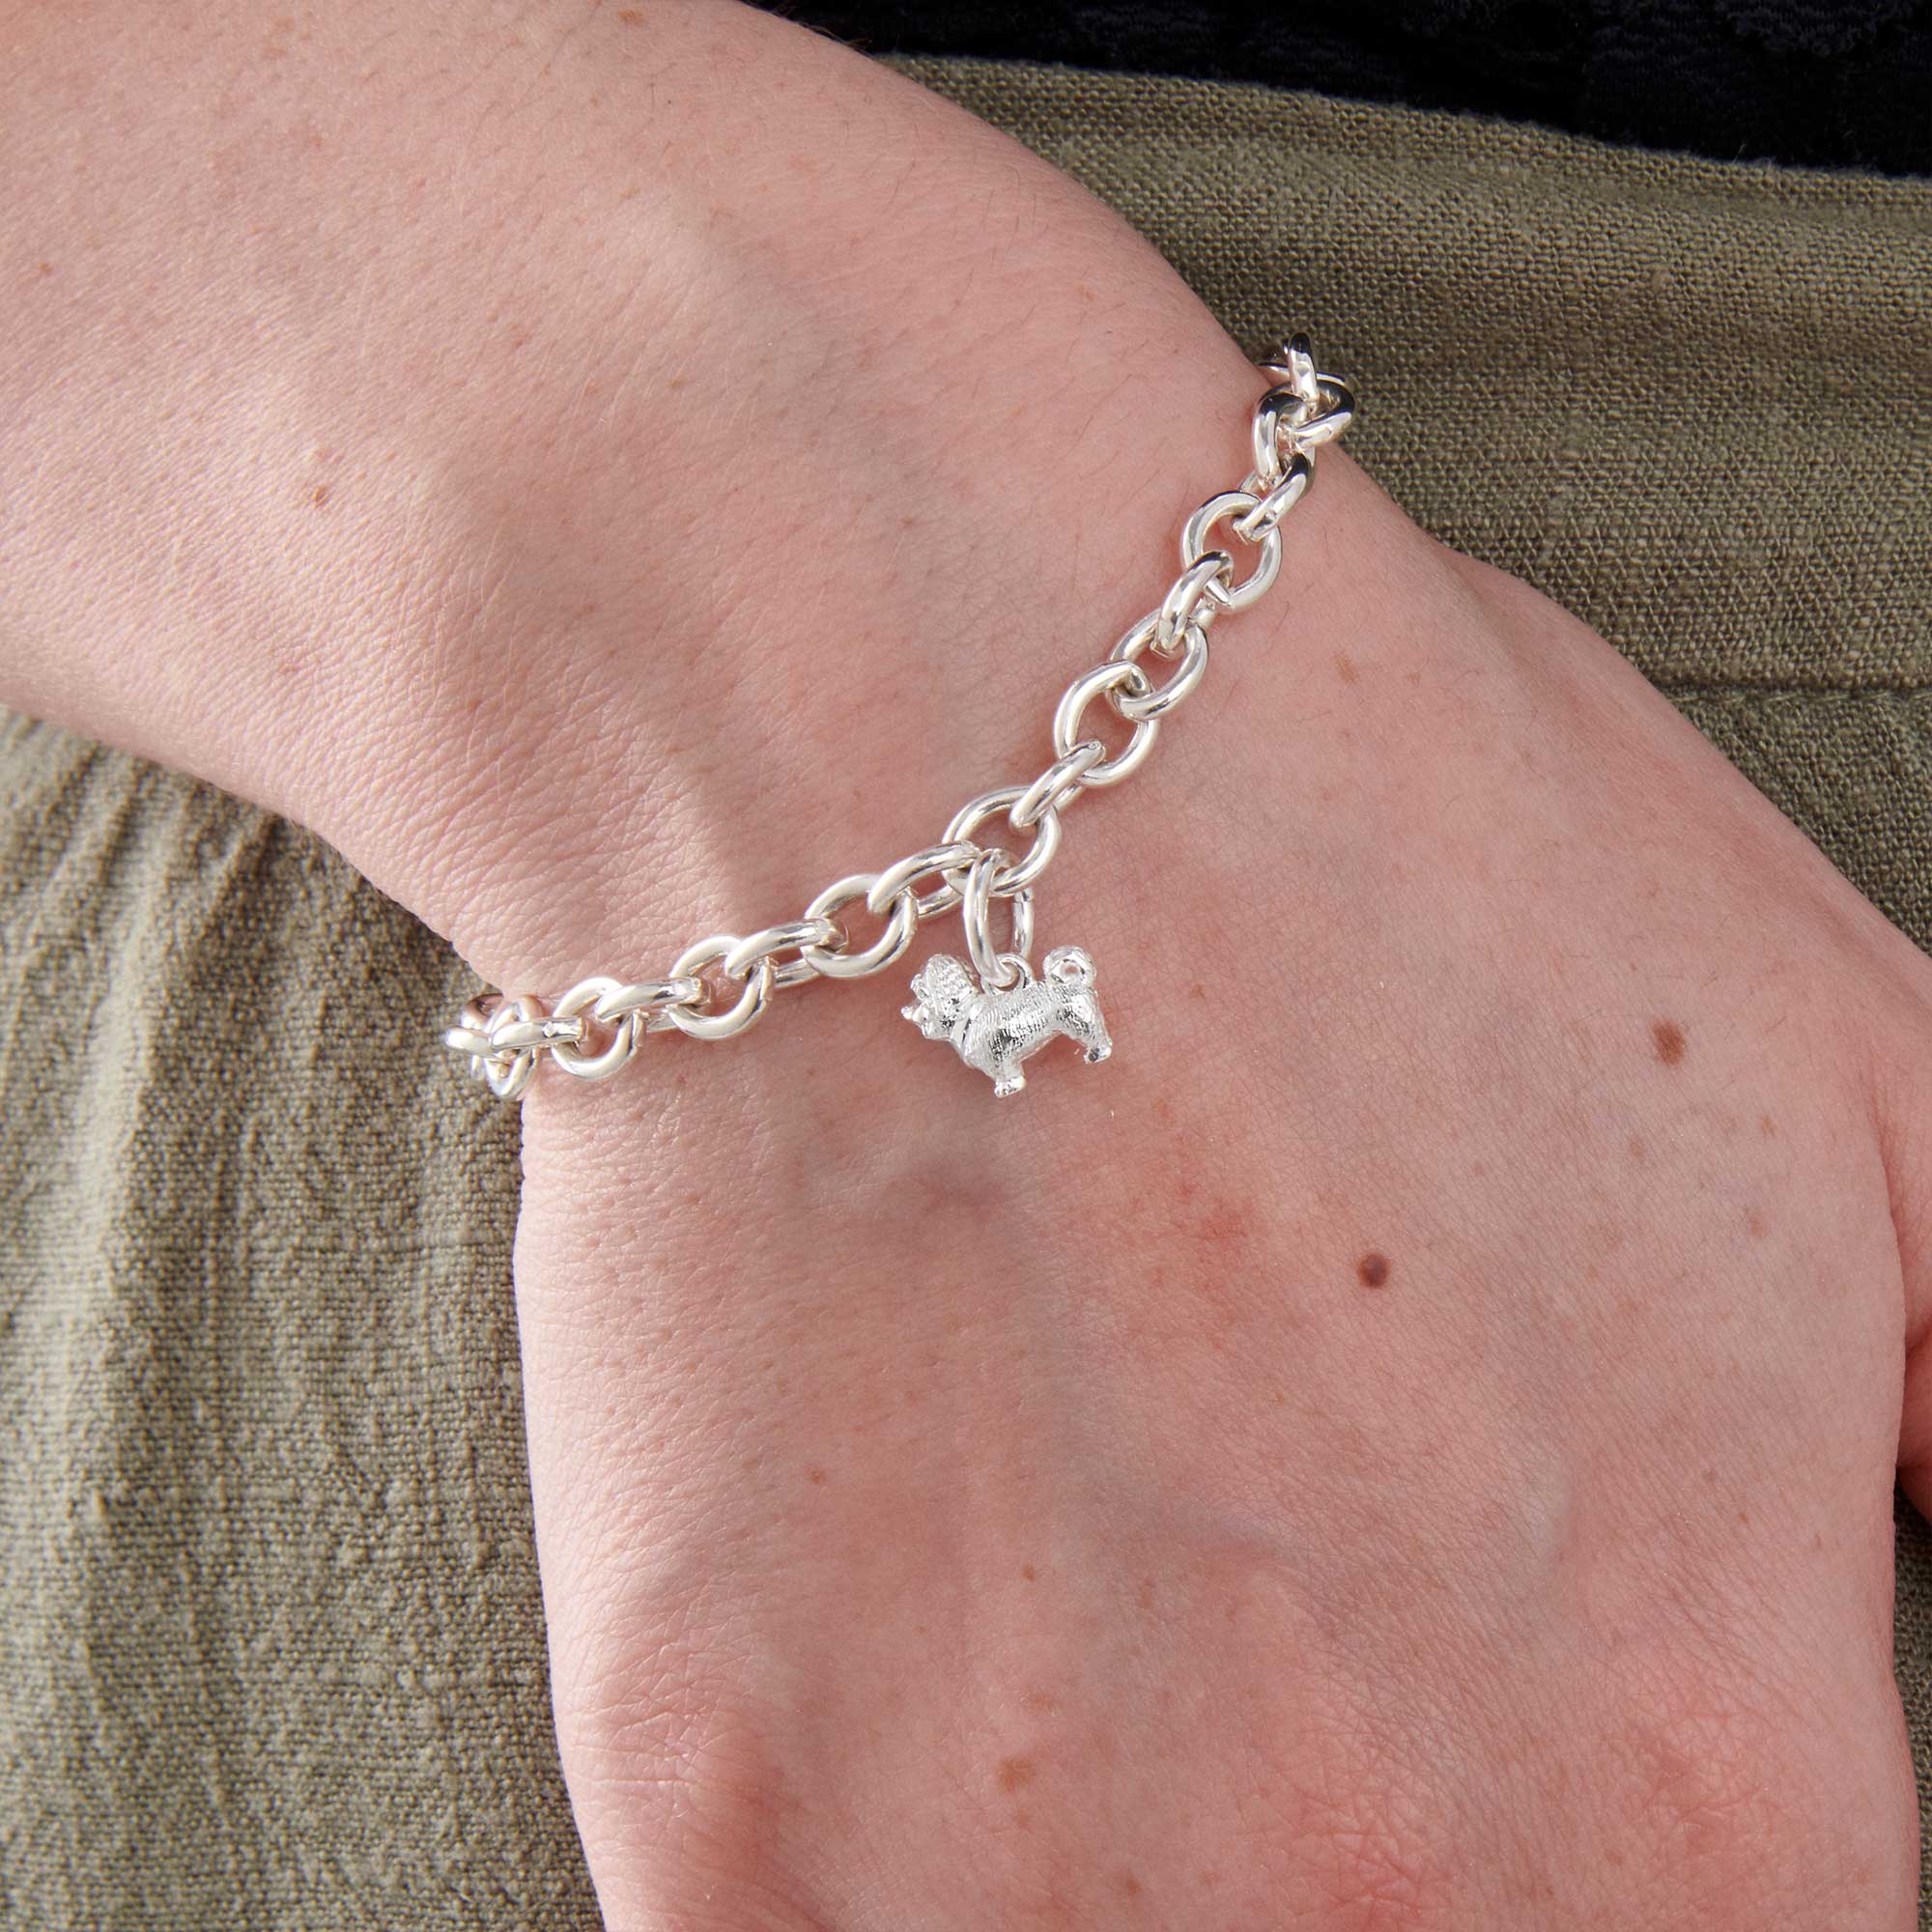 shih tzu silver charm bracelet scarlett jewellery original dog charms